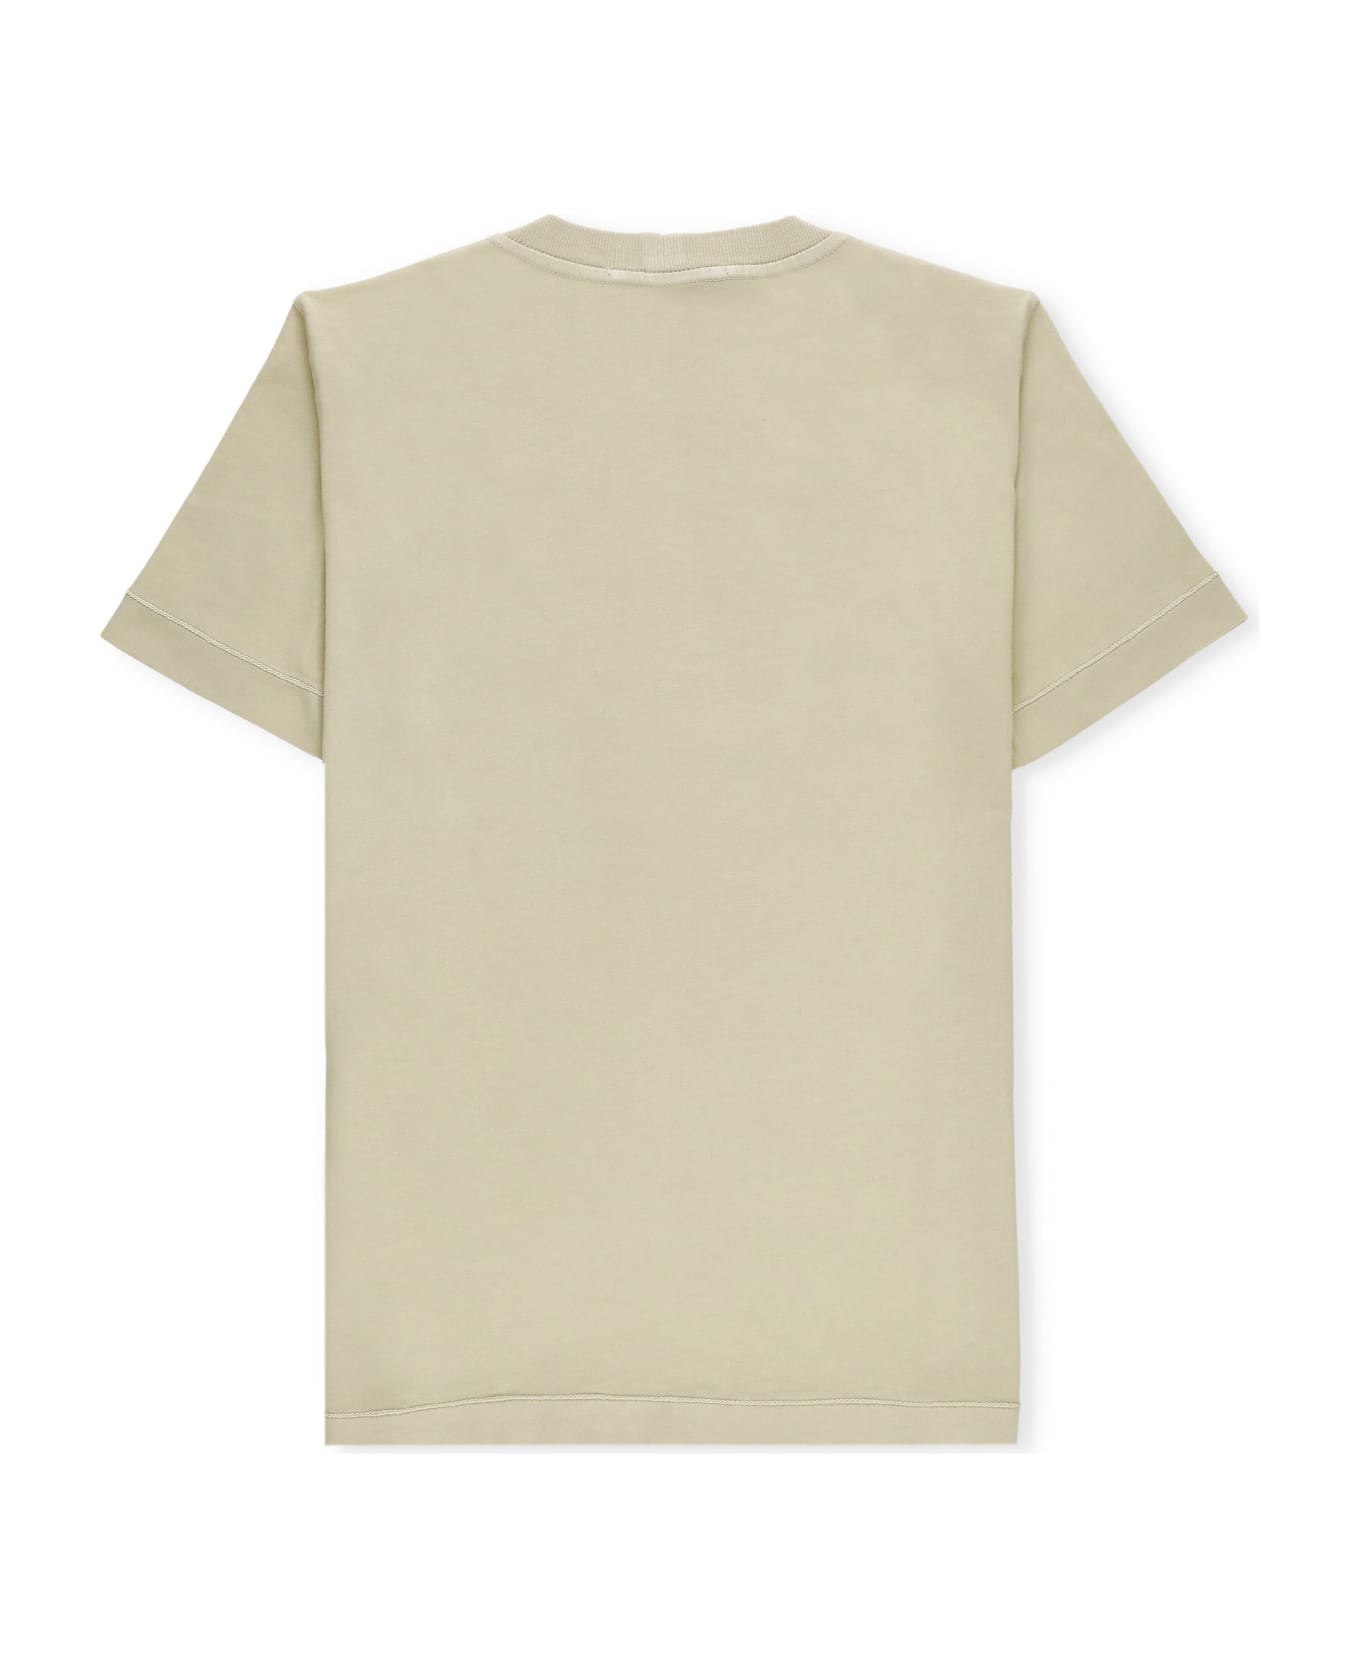 Stone Island Cotton T-shirt - Beige